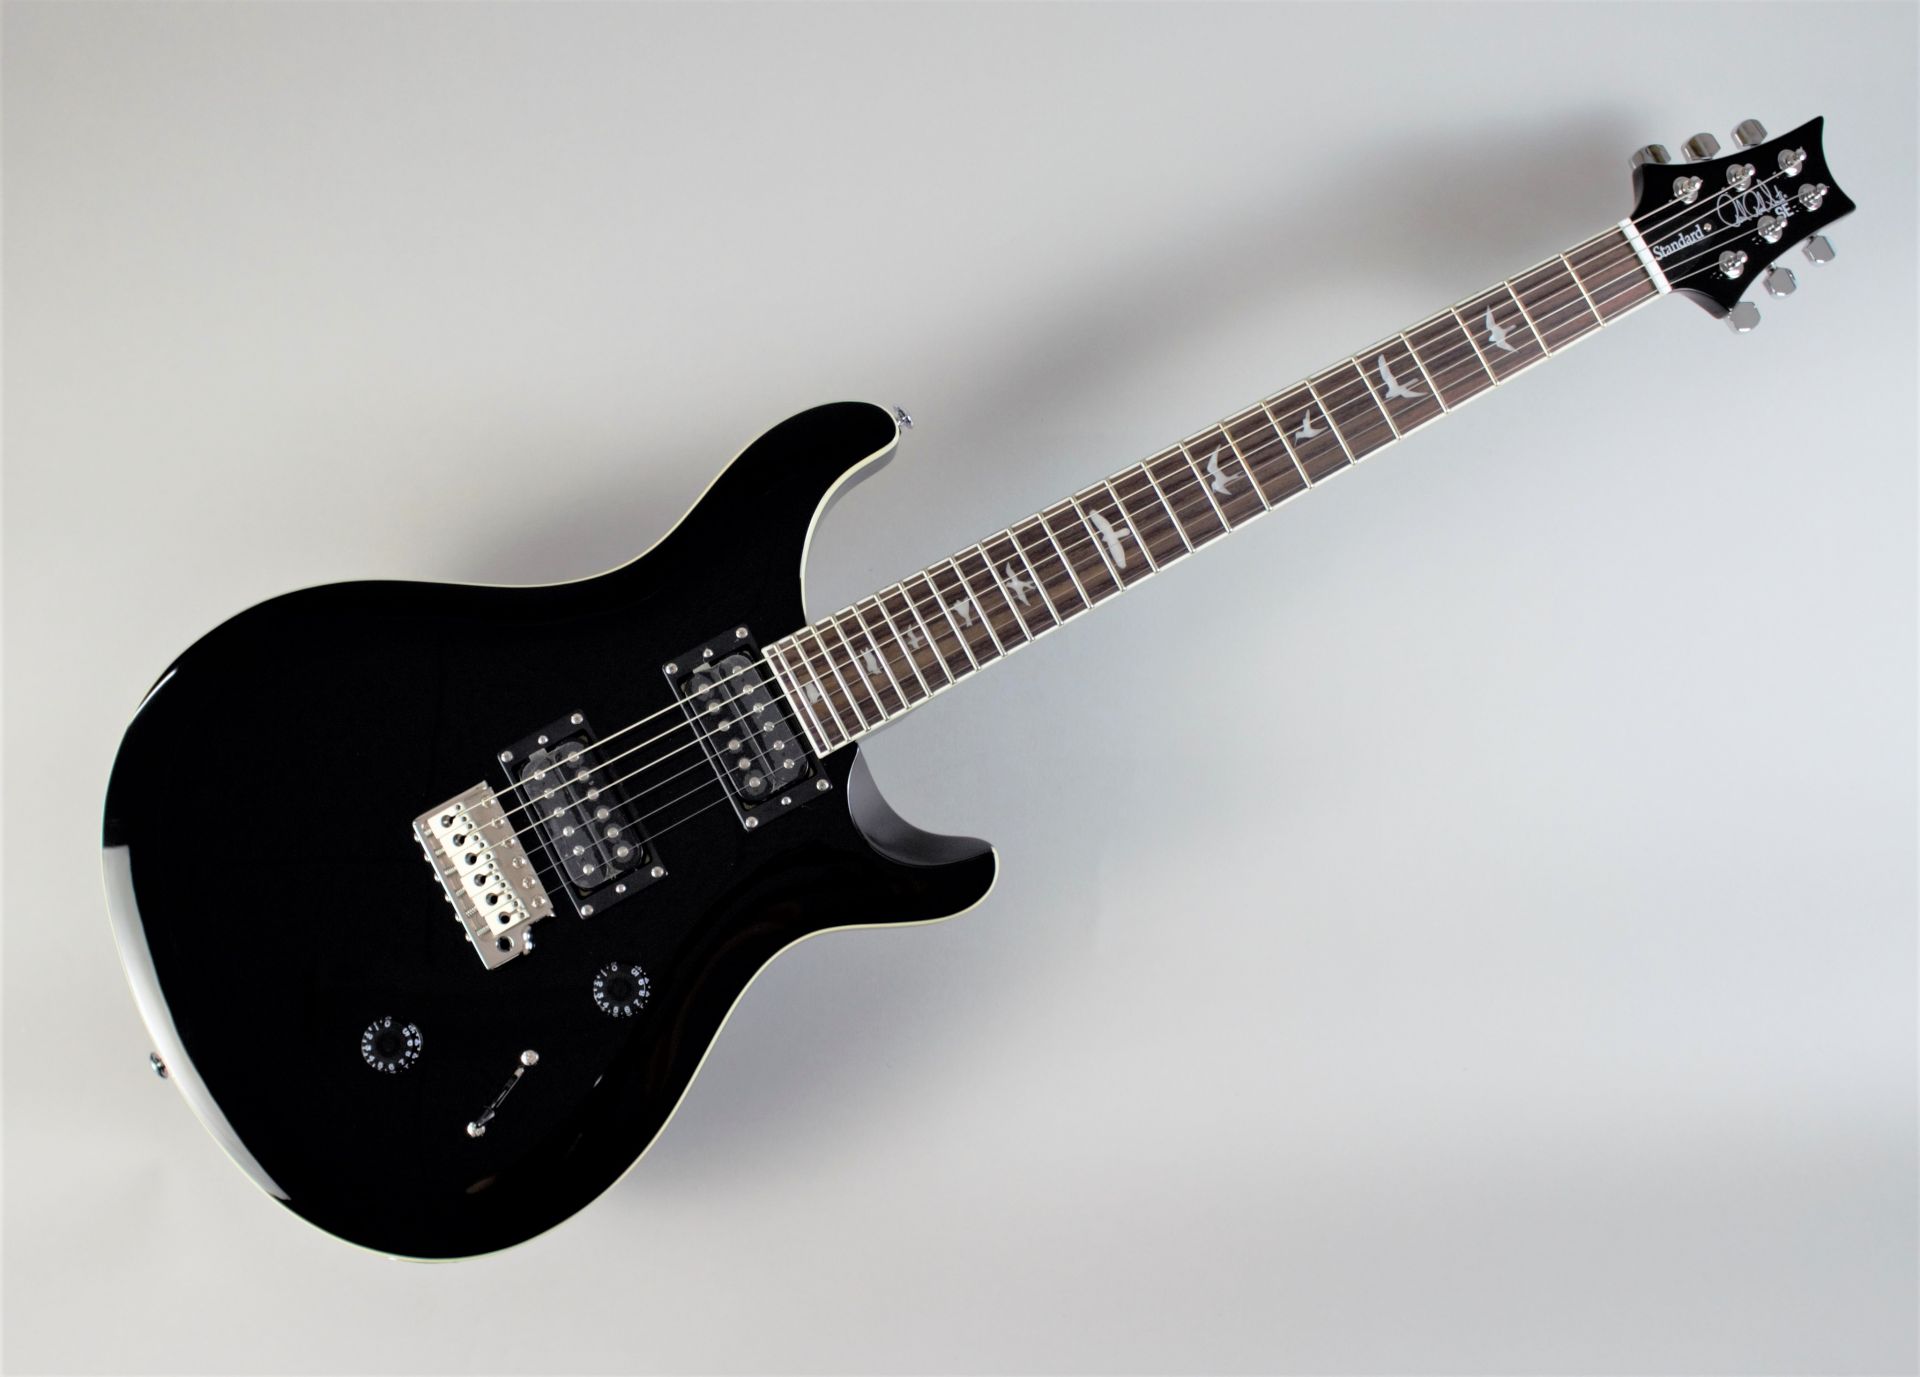 *入荷しました！精悍なBLACKカラーを身にまとったSE Standard 24 「初めてのギター」にも「“これぞ”の1本」にも最適なギター「PRS SE Standard 24」 今回このオリジナルカラーを採用した島村楽器オーダーモデルが発売します。 - PRS STANDARD 24シリーズをベ […]